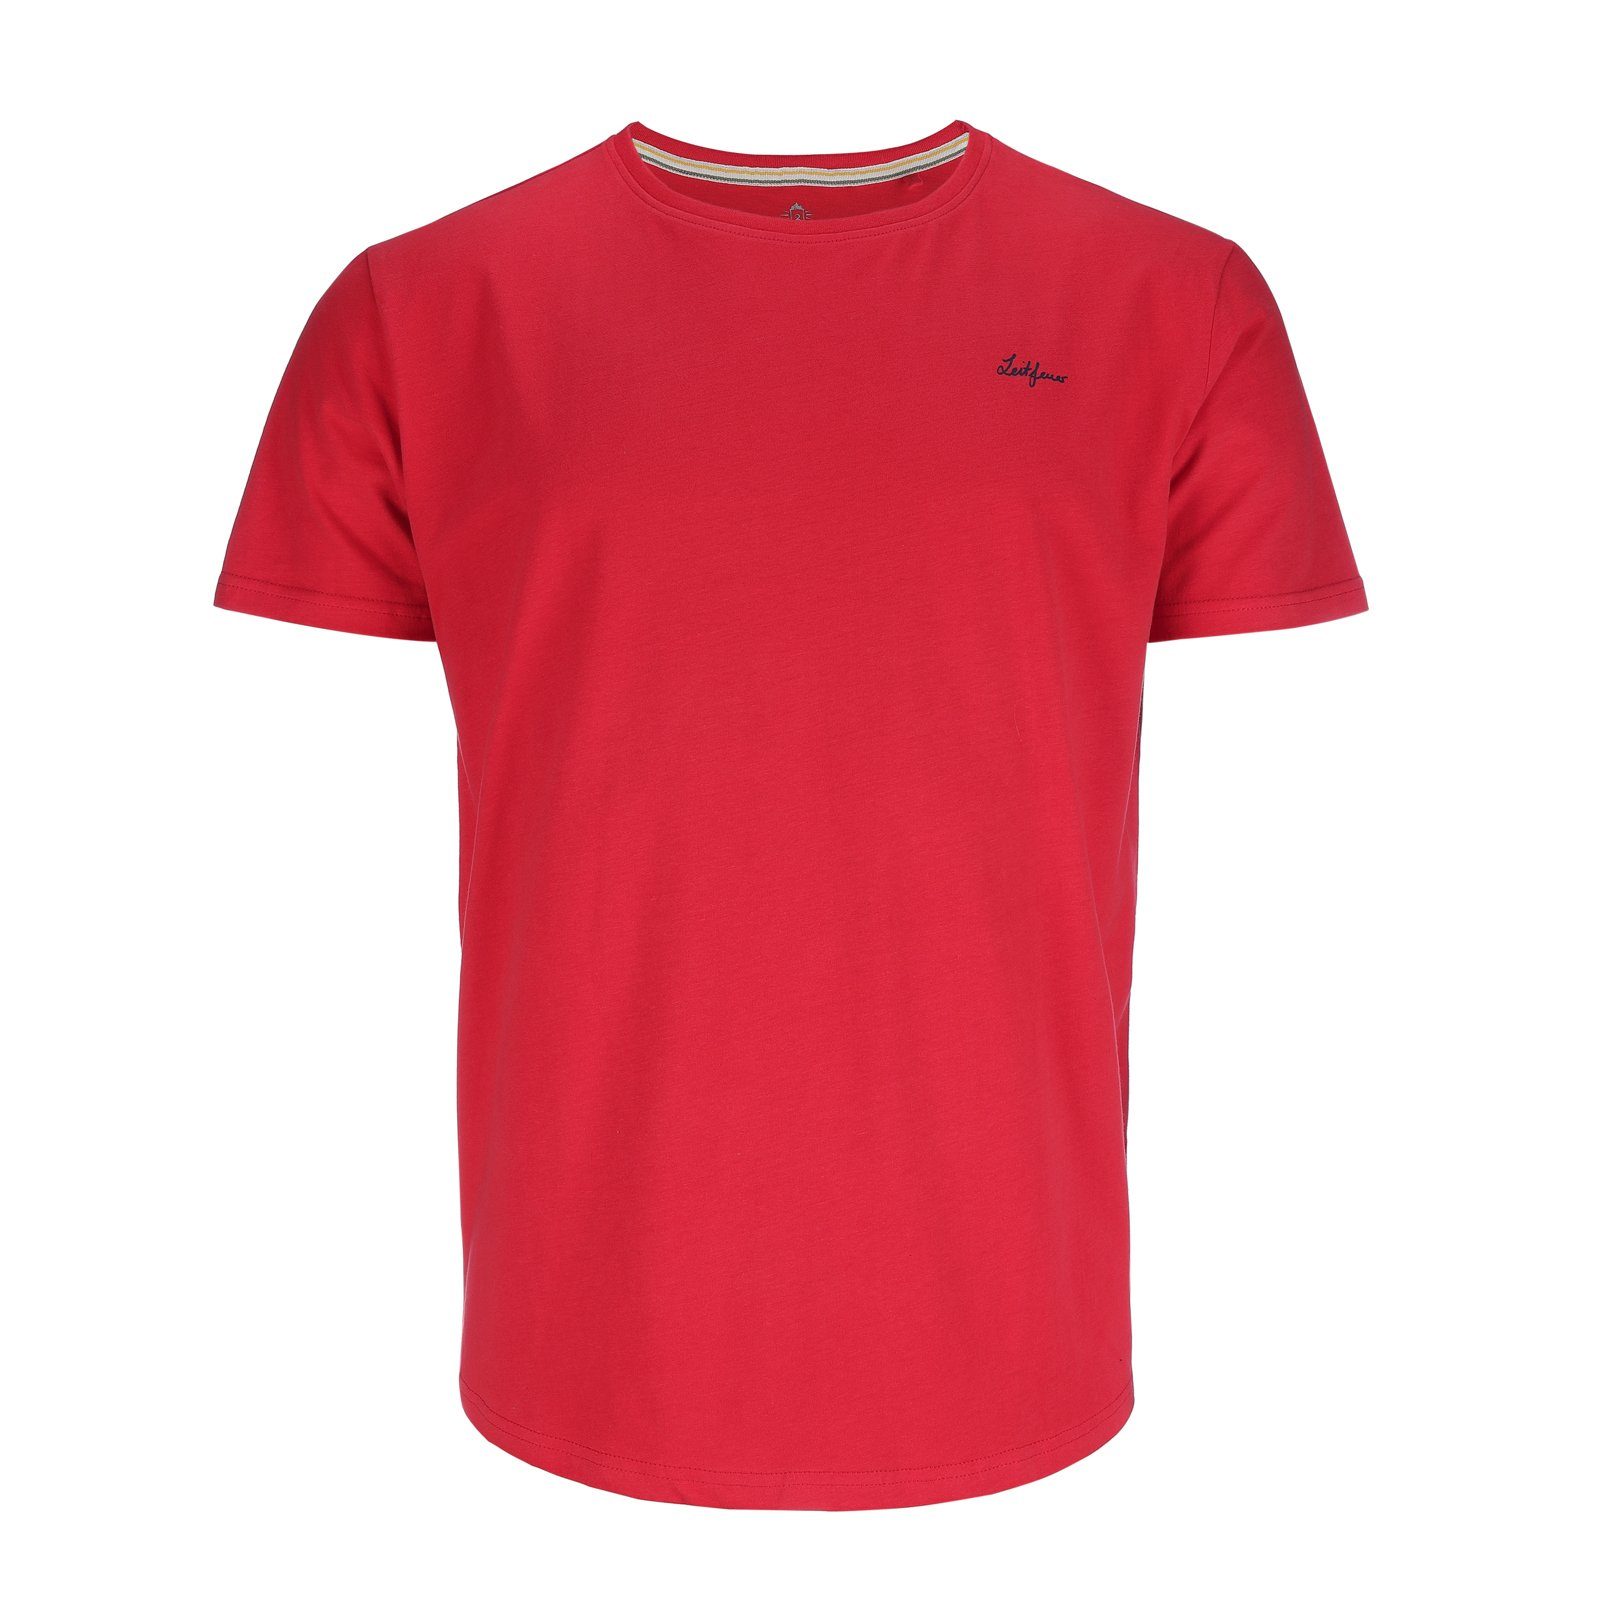 Leitfeuer T-Shirt Herren Kurzarmshirt Rundhalsshirt samtig weich Single Jersey Baumwolle rot